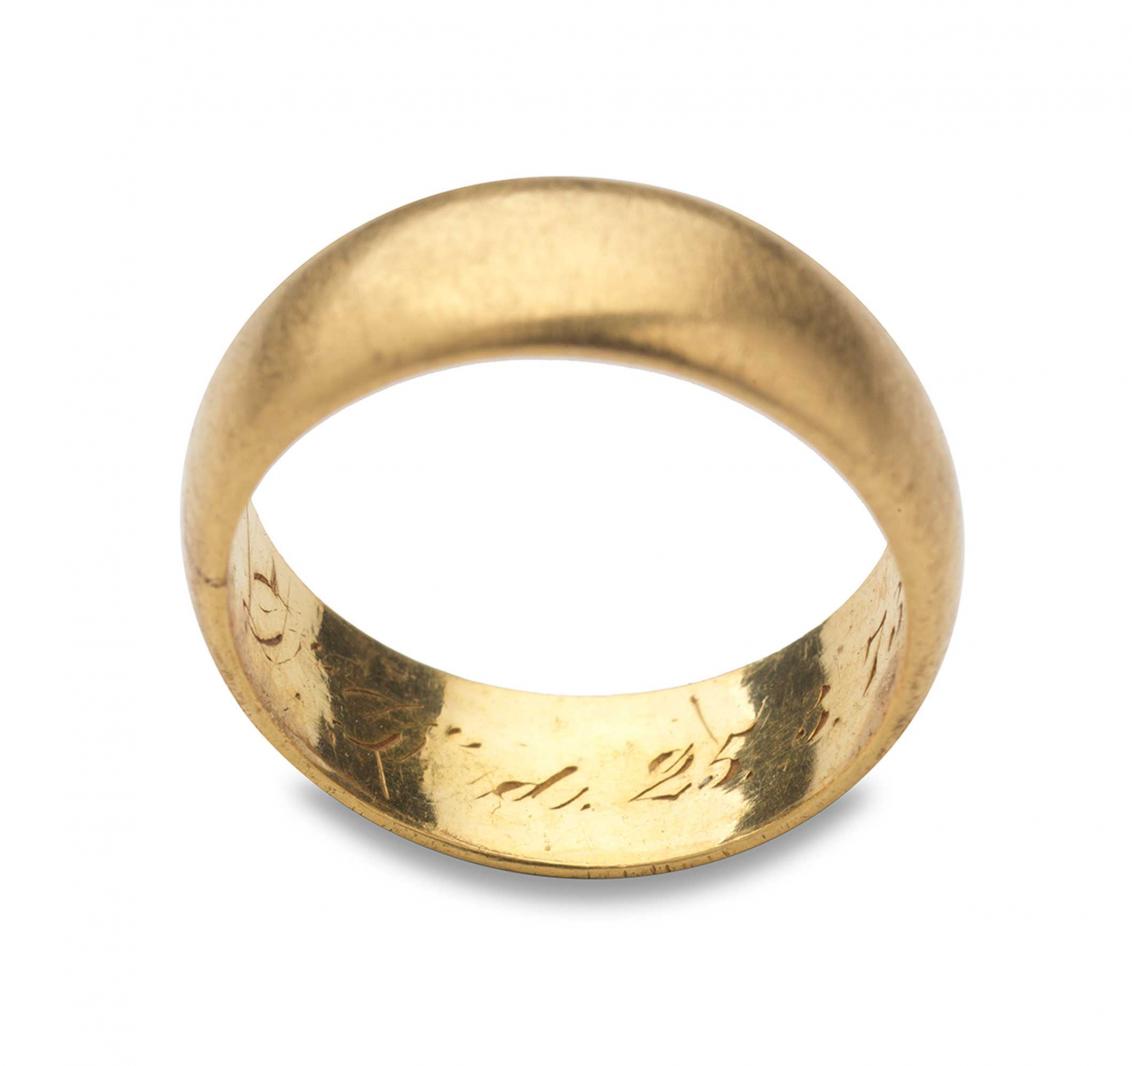 Goldener Ring mit Inschrift "D. D. 25.3.73"